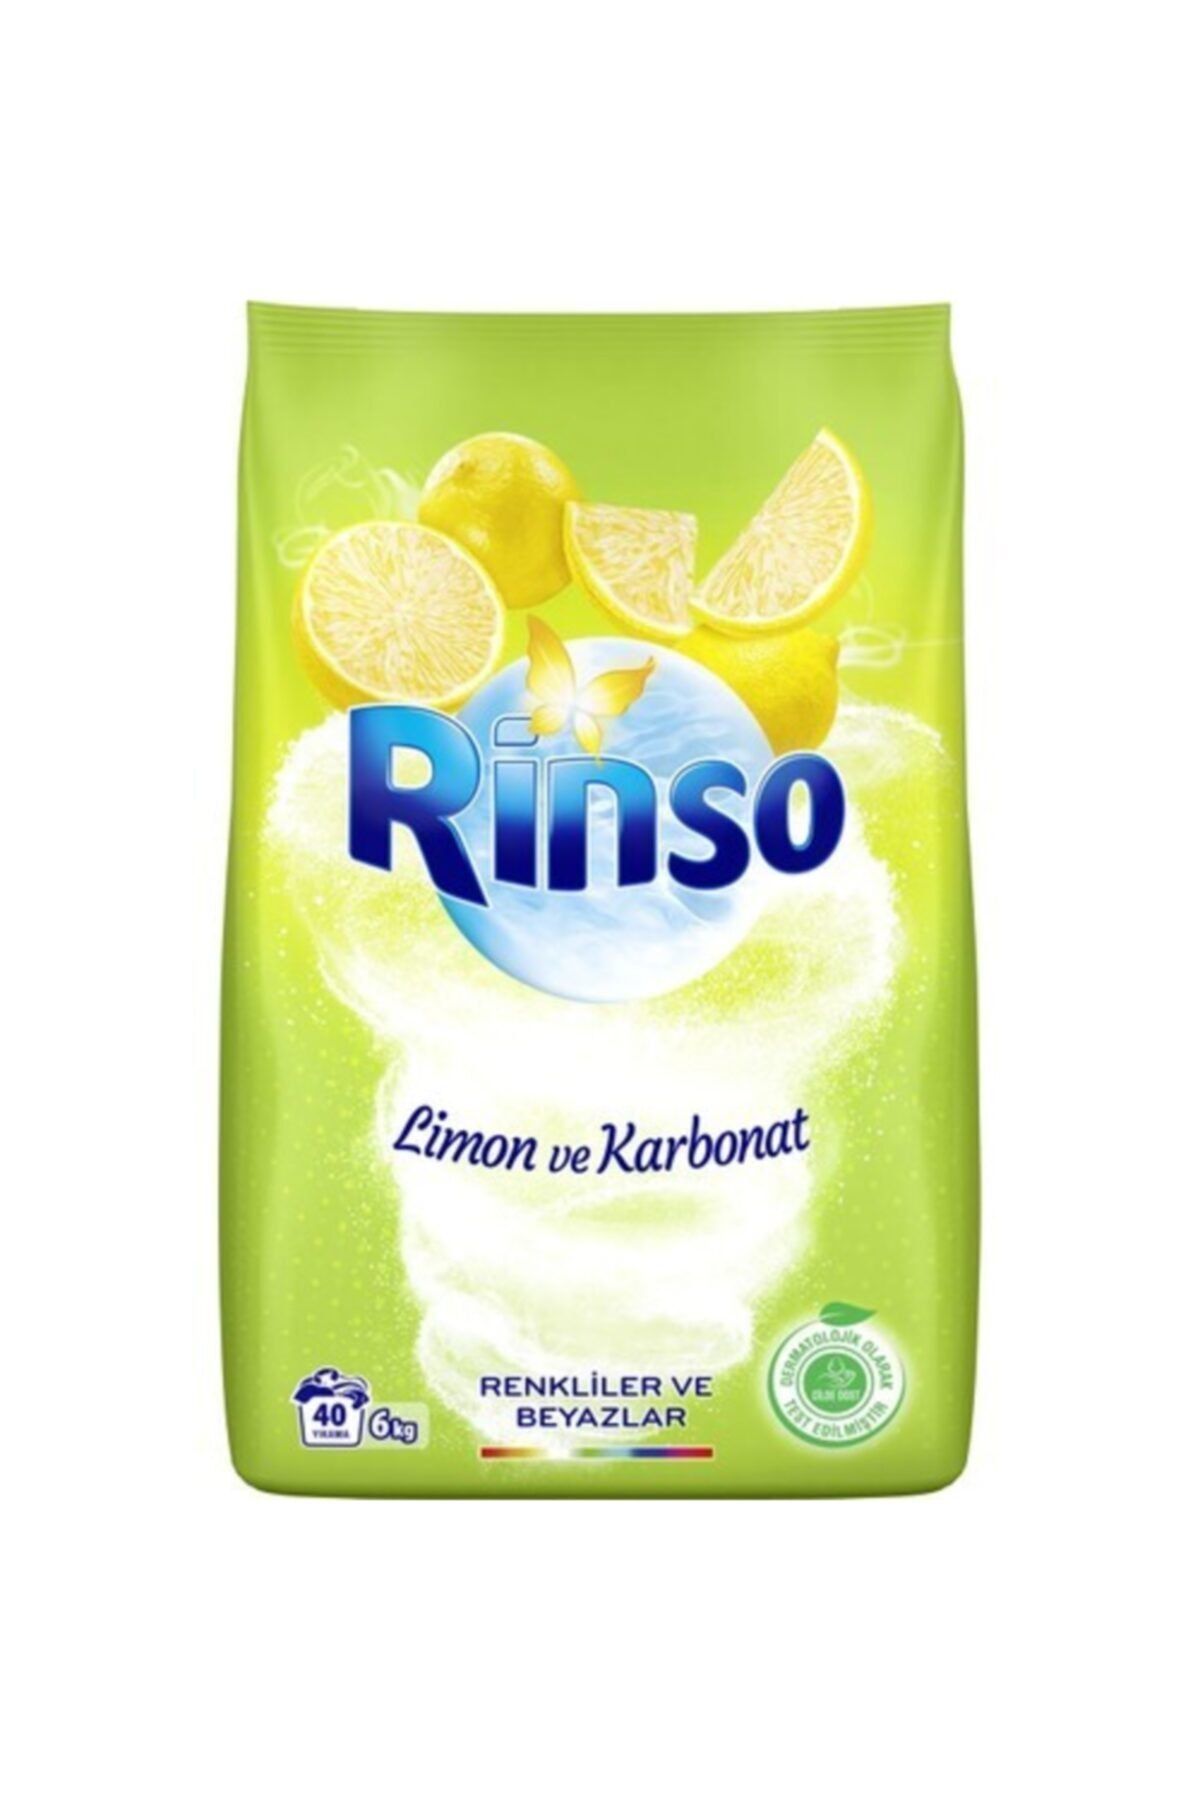 Rinso Limon Ve Karbonat Renkliler Ve Beyazlar Için Toz Çamaşır Deterjanı 6 Kg 40 Yıkama